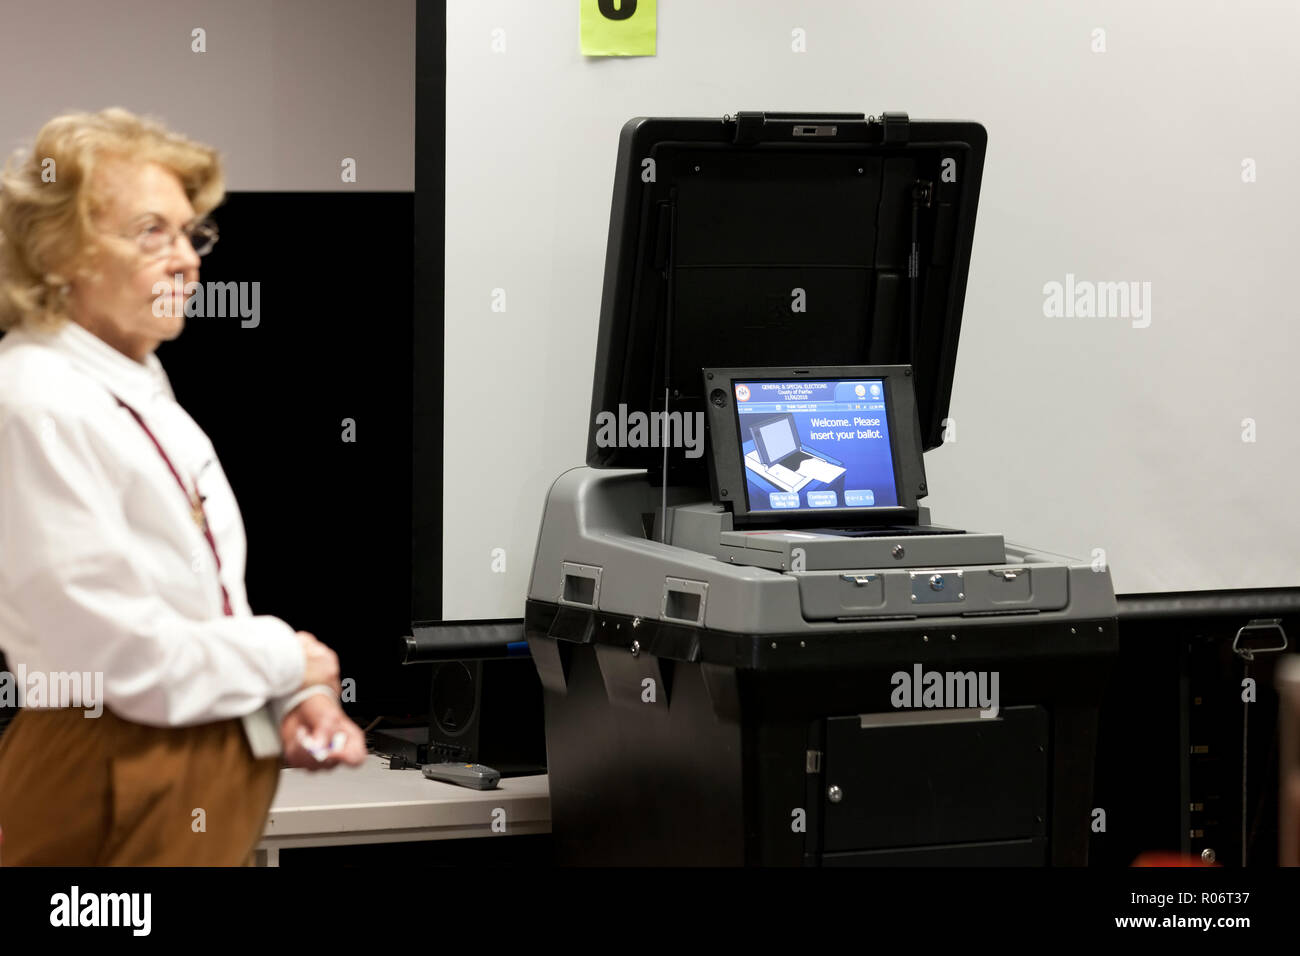 DS200 Precinct scanner & tabulatore scansione ottica del sistema di voto in un luogo di polling - Fairfax County, Virginia, Stati Uniti d'America Foto Stock